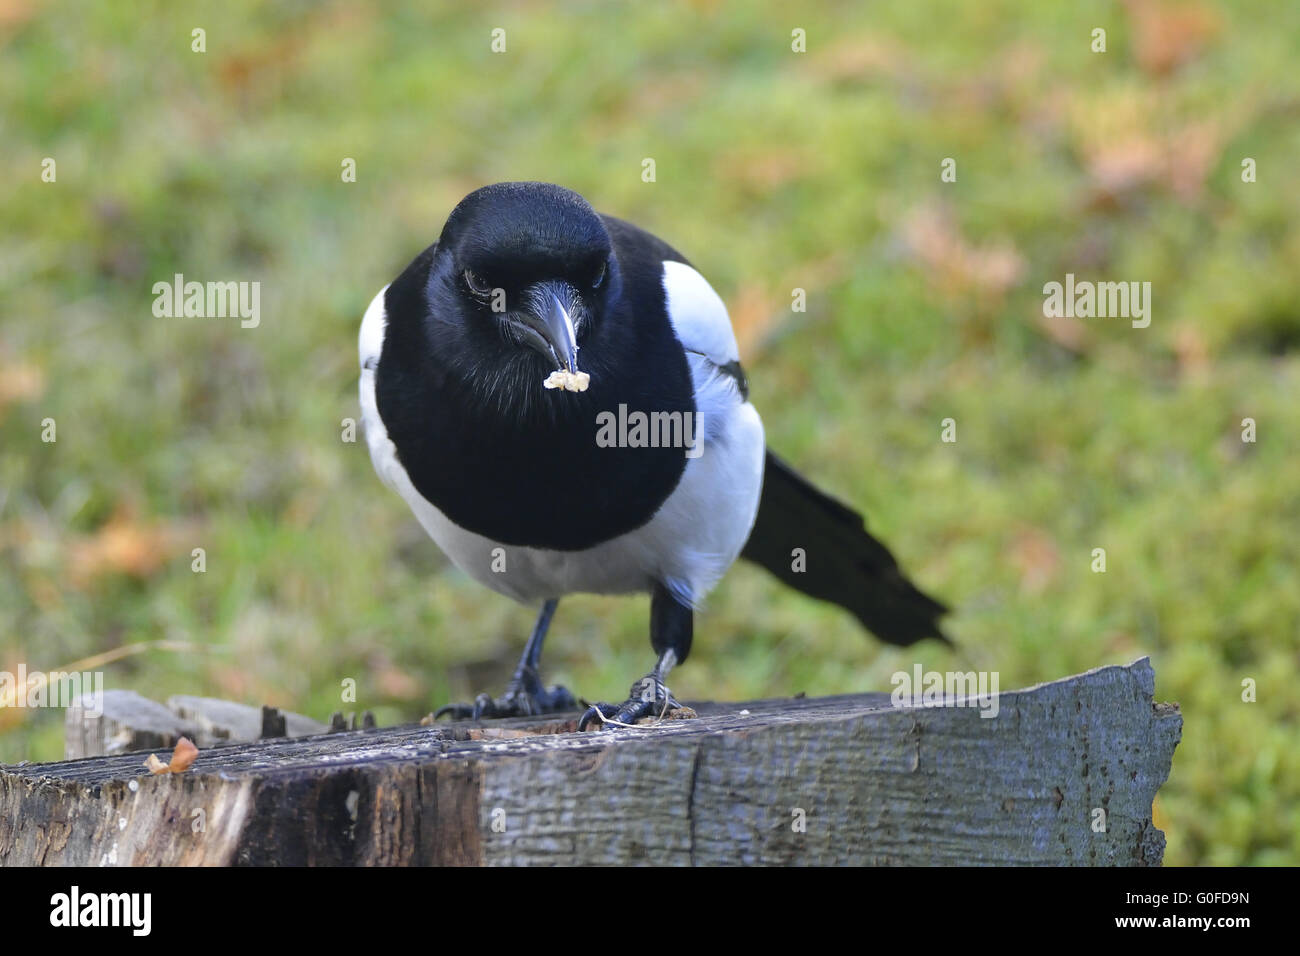 Common magpie Stock Photo